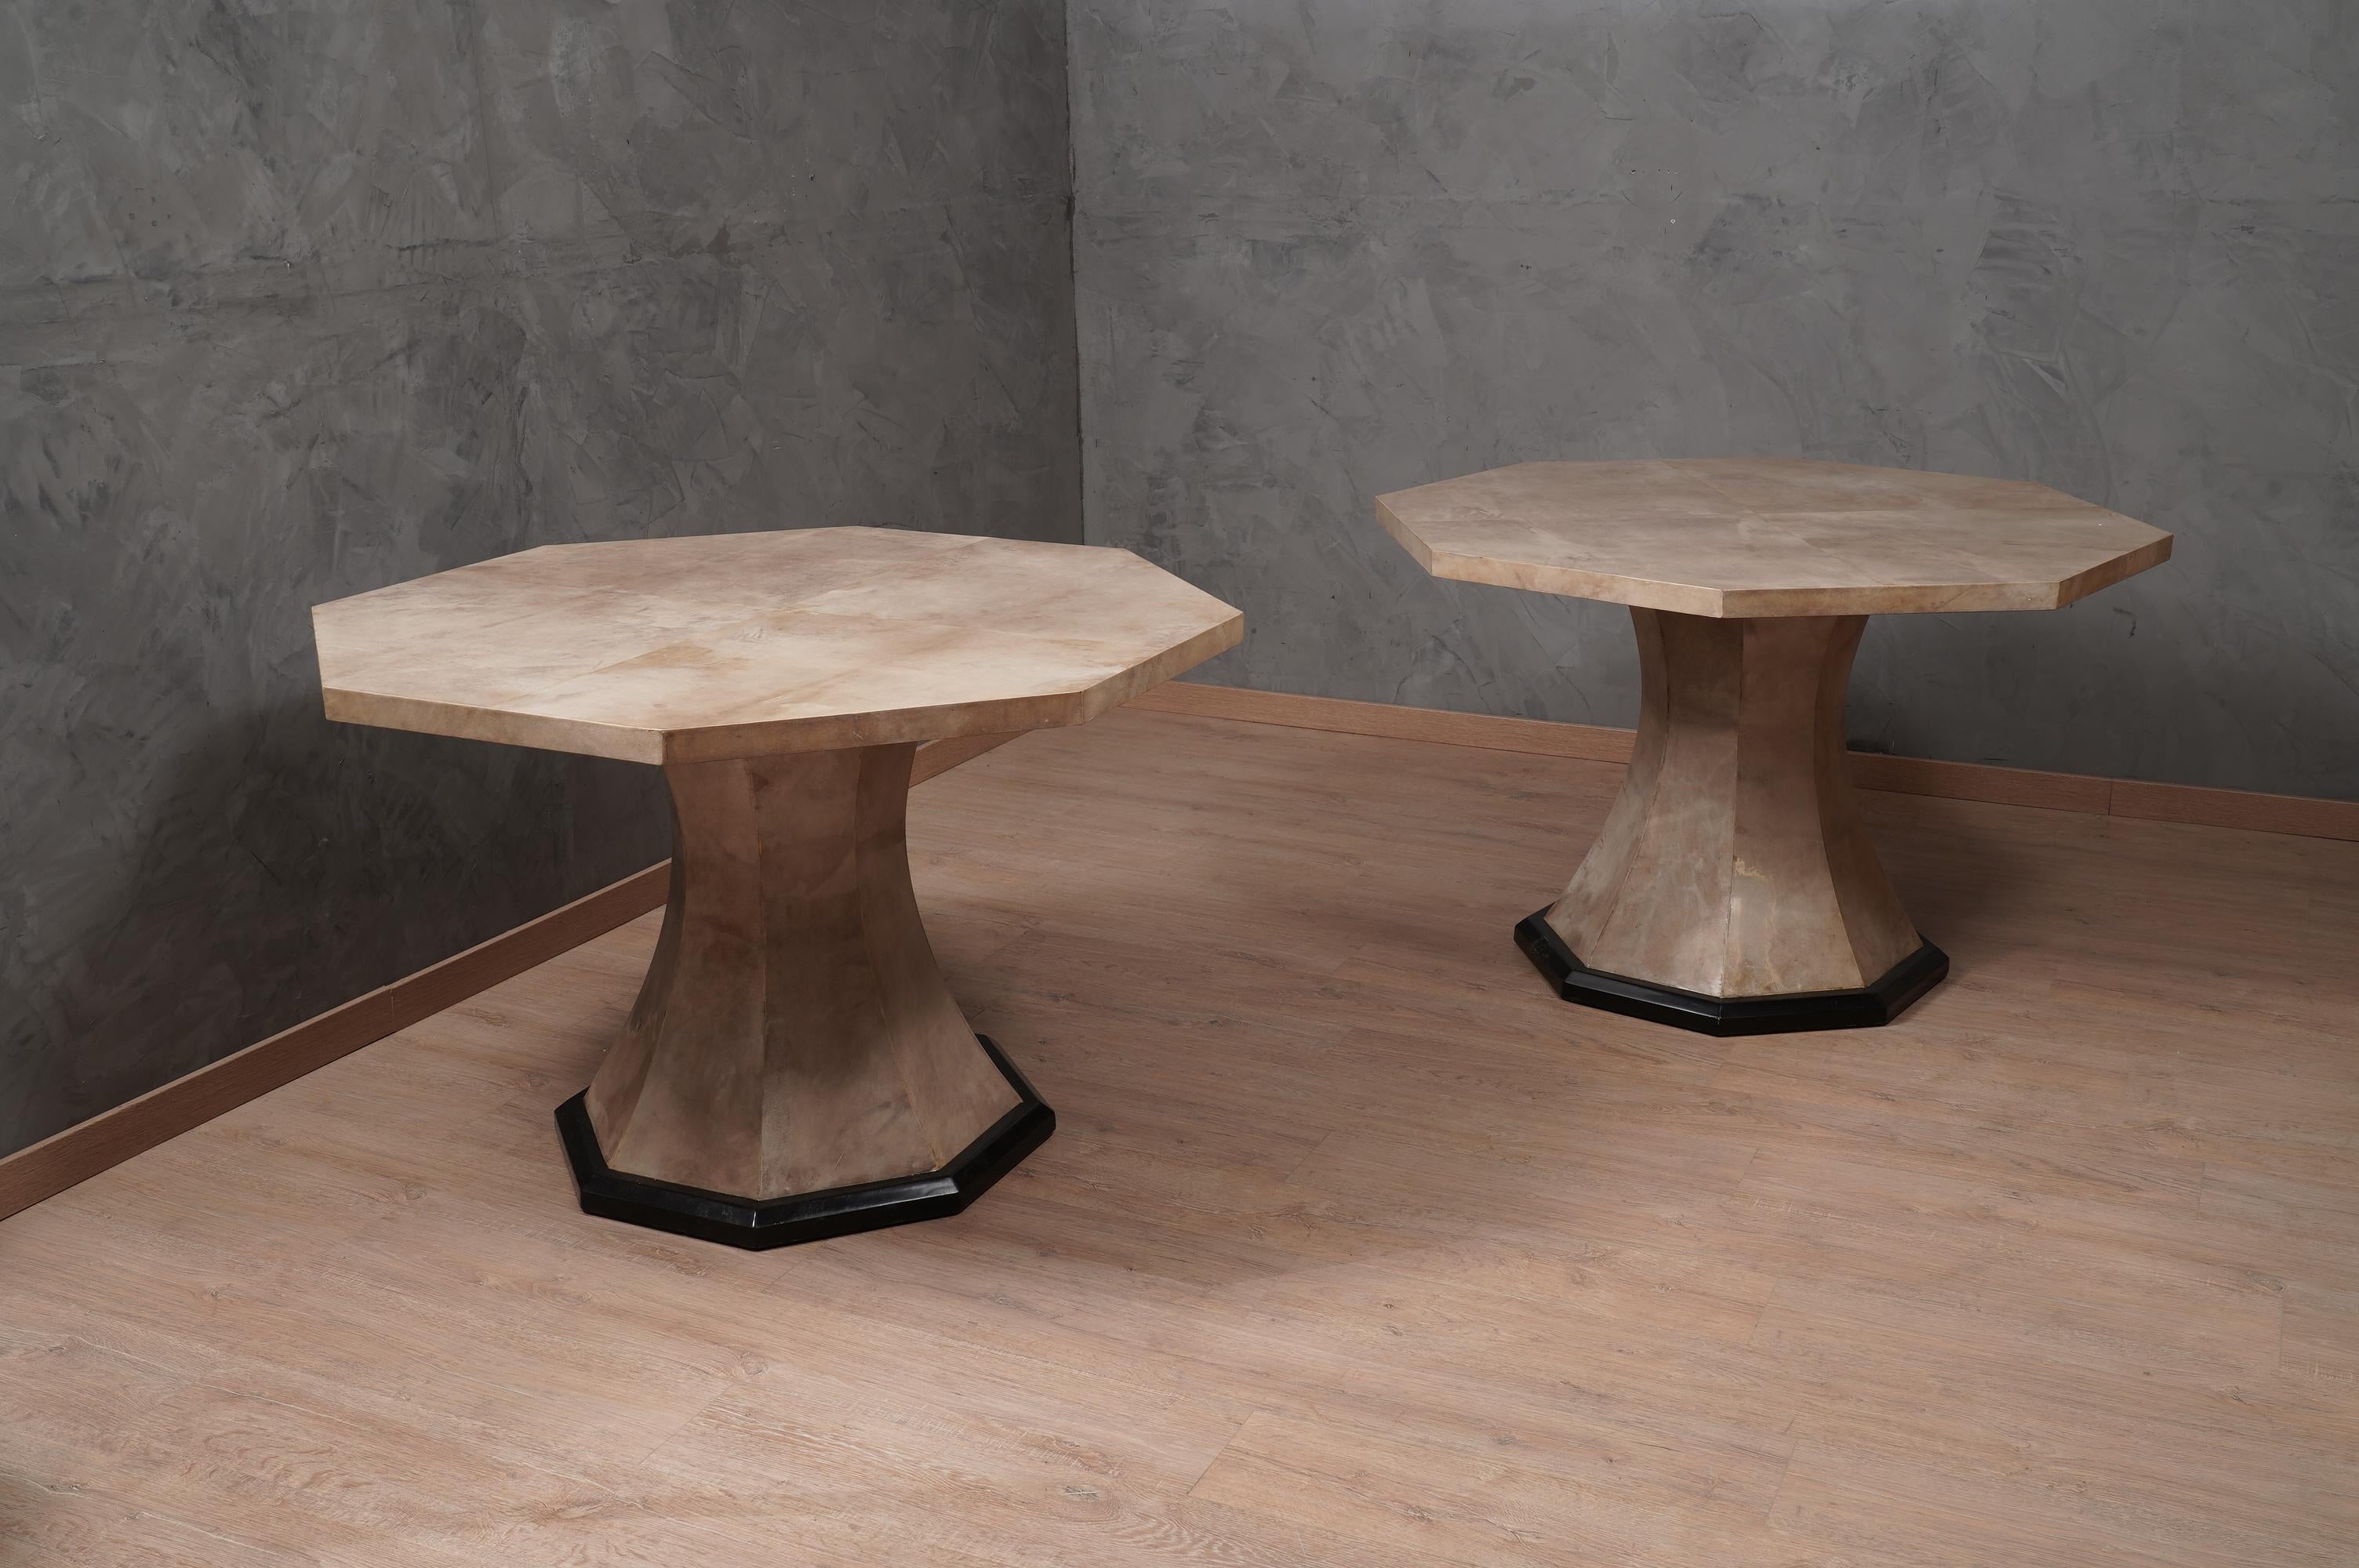 Eleganter und origineller achteckiger Tisch aus Pergamentleder, geradlinig, klar und gut verarbeitet. Der Tisch aus dem Ende des letzten Jahrhunderts hat einen sehr starken Charakter, aber gleichzeitig ist er durch sein Design sehr leicht.

Der